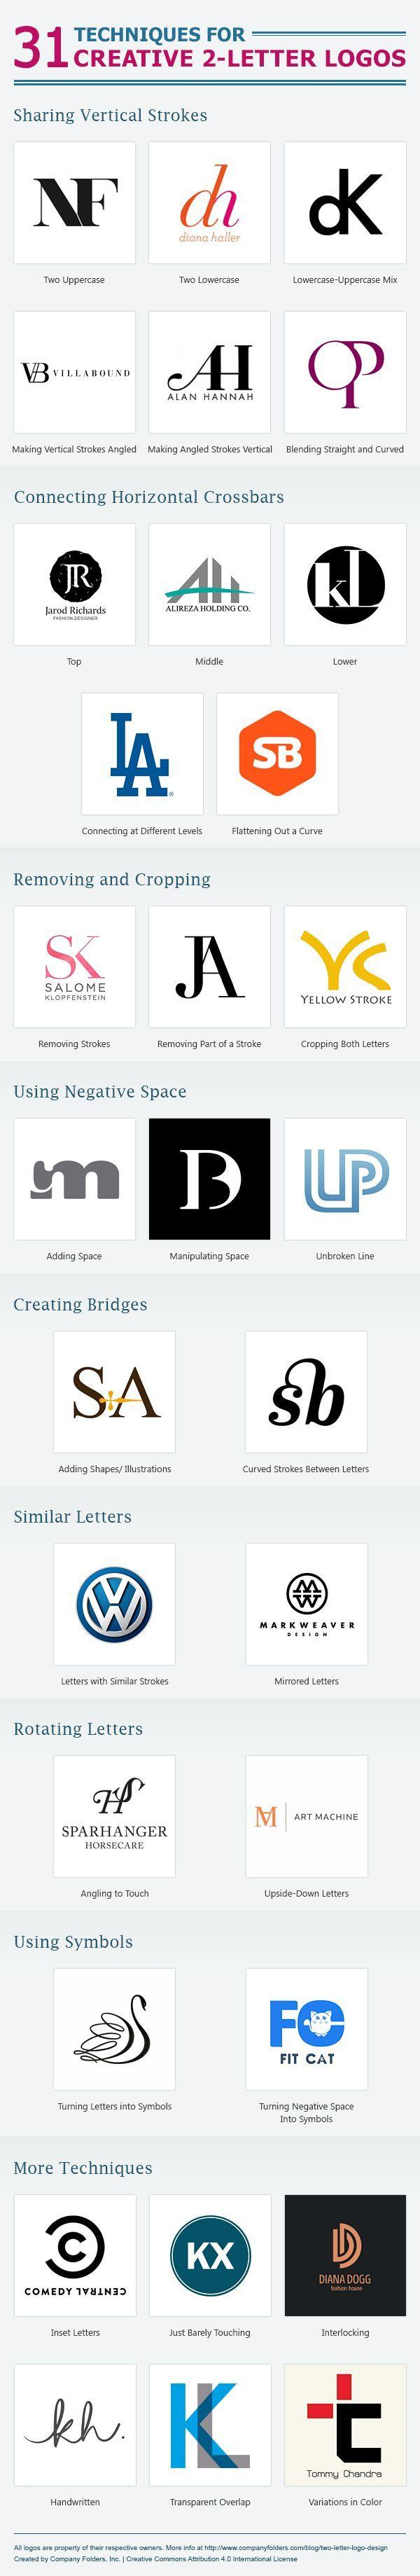 Just Two Letters Company Logo - 31 Técnicas para criar um logo com apenas duas letras | Logo Design ...